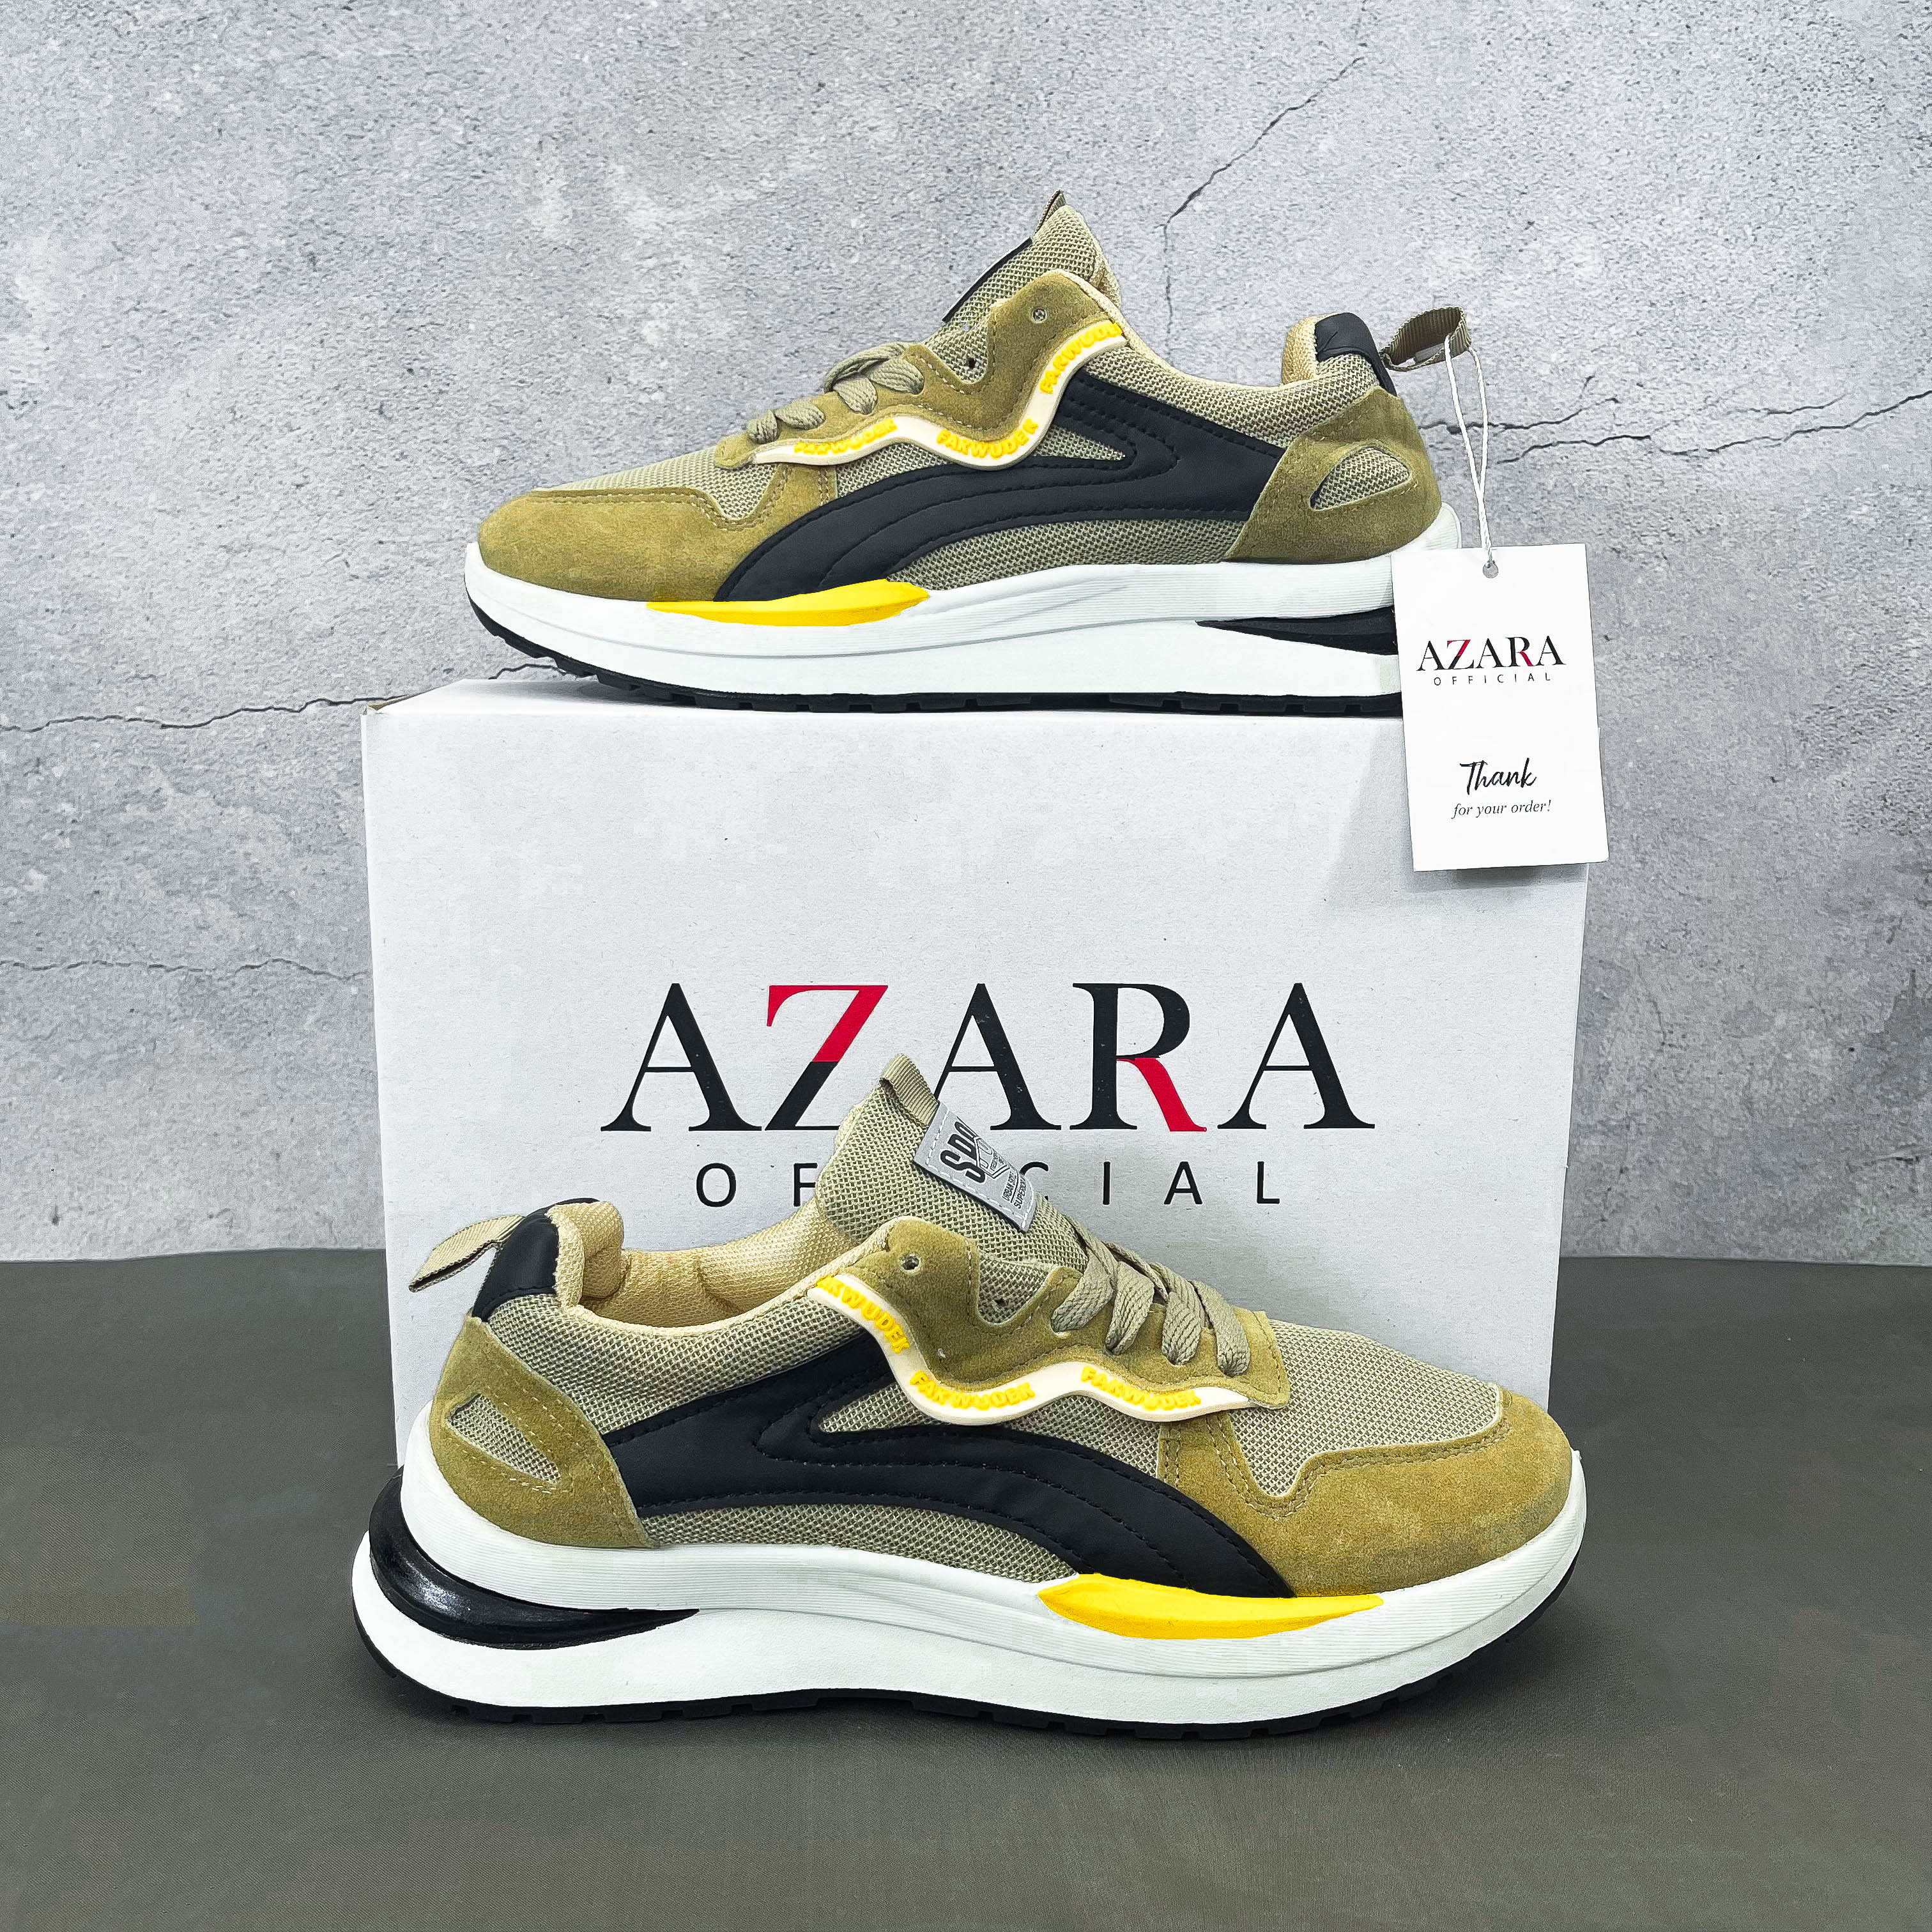 Giày Thể Thao Nam AZARA - Sneaker Màu Kaki - Xám, Giày Thể Thao Giúp Tăng Chiều Cao , Vải Thoáng Khí, Siêu Bền - G5476